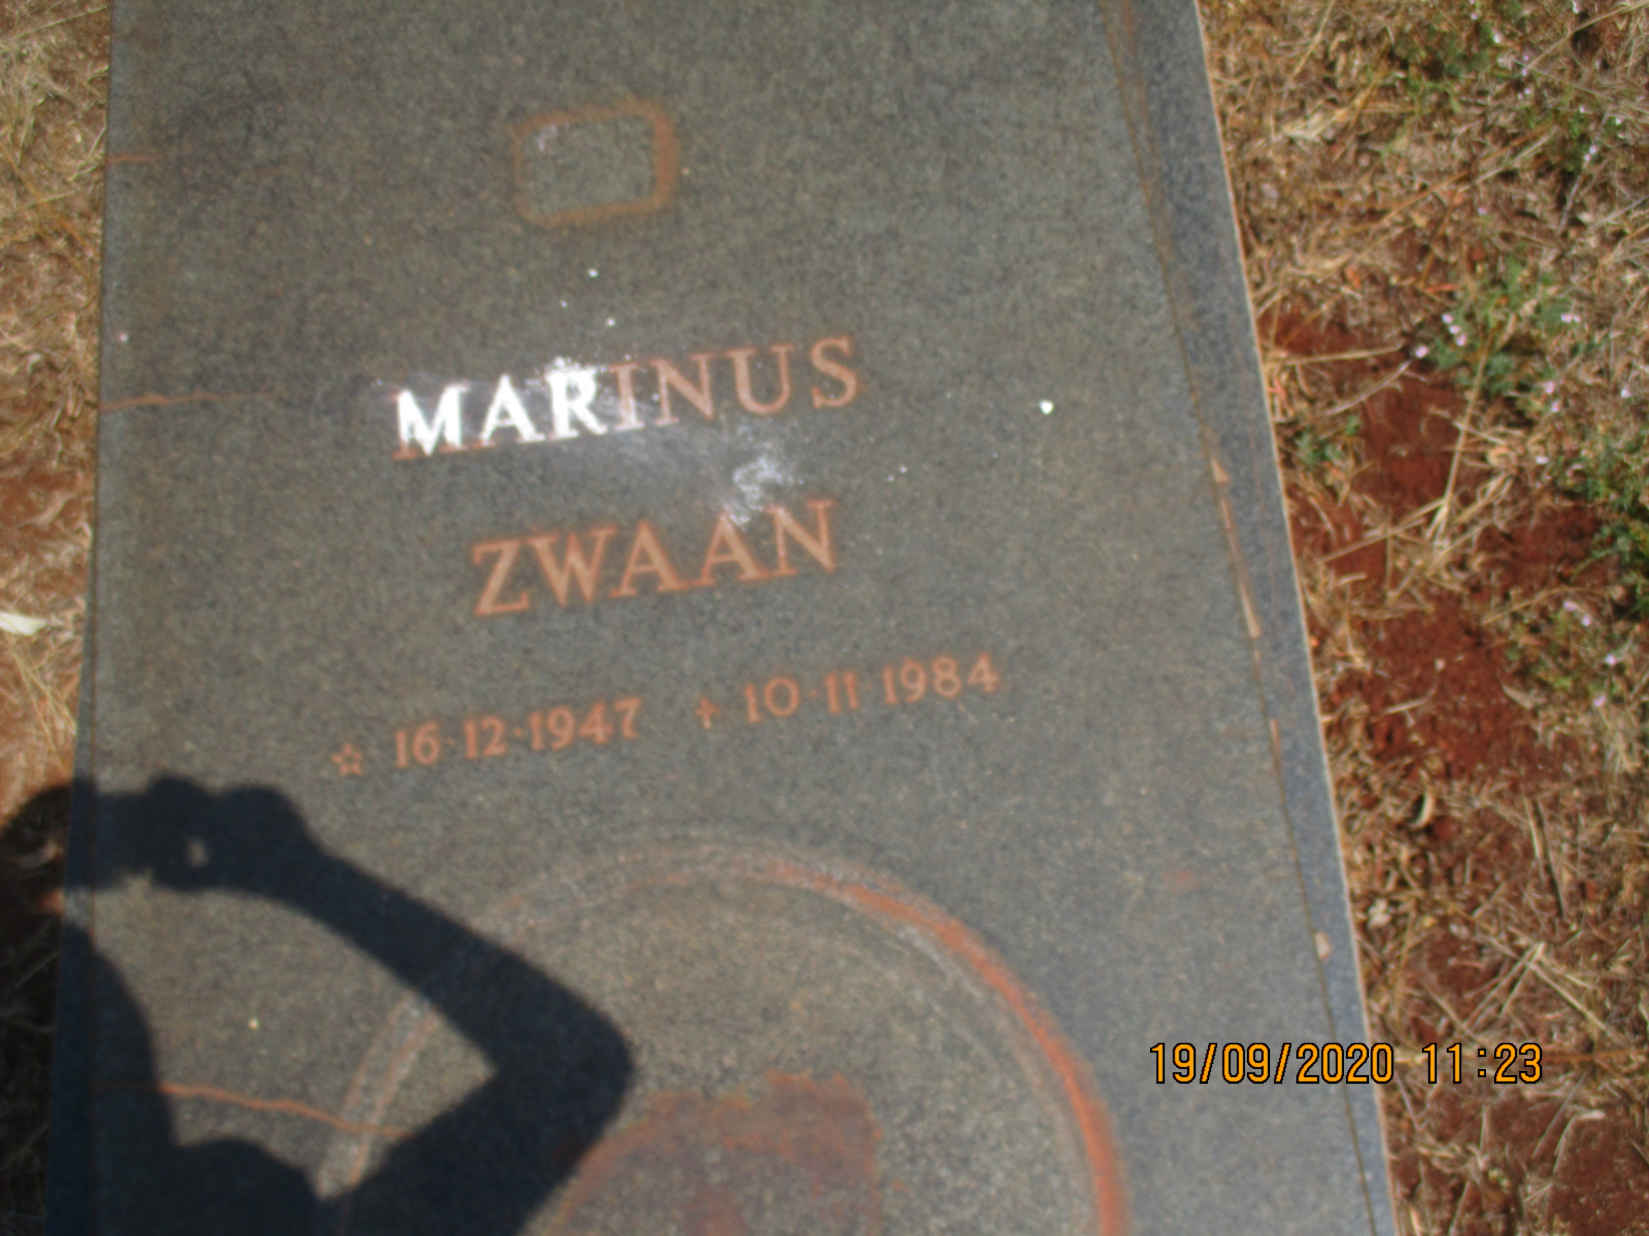 ZWAAN Marinus 1947-1984